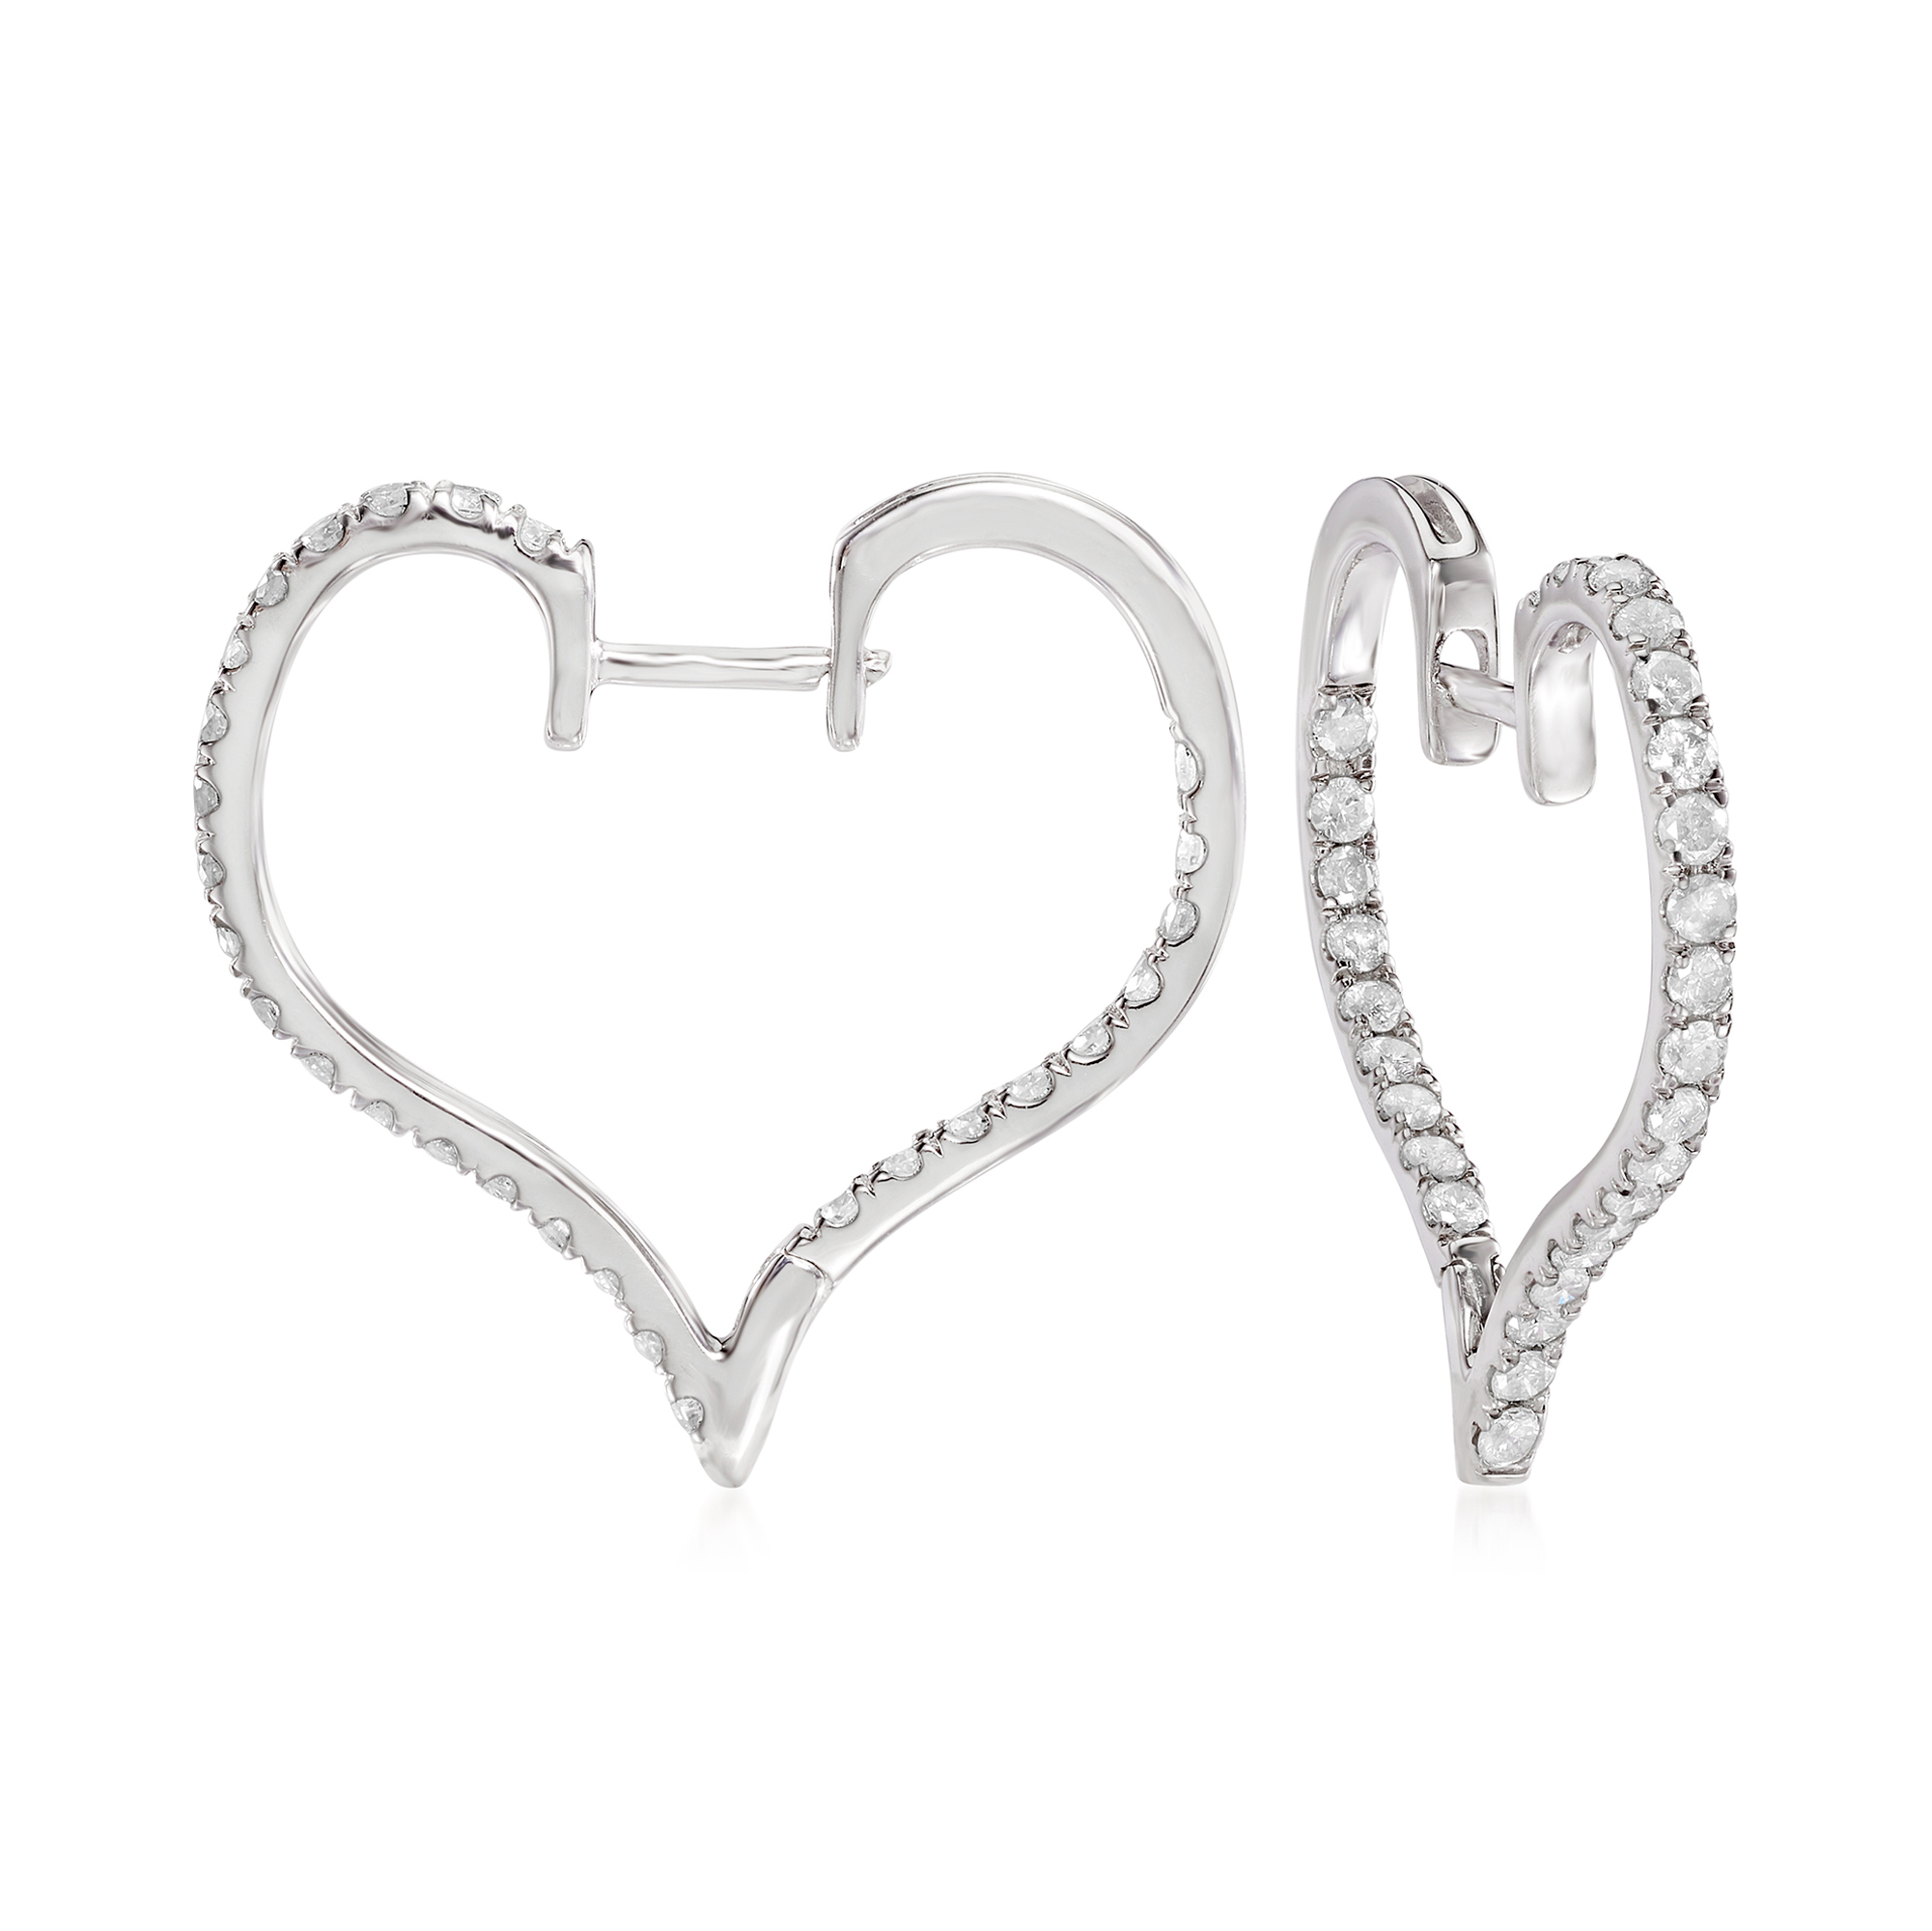 1.00 ct. t.w. Diamond Heart Hoop Earrings in Sterling Silver. 3/4 